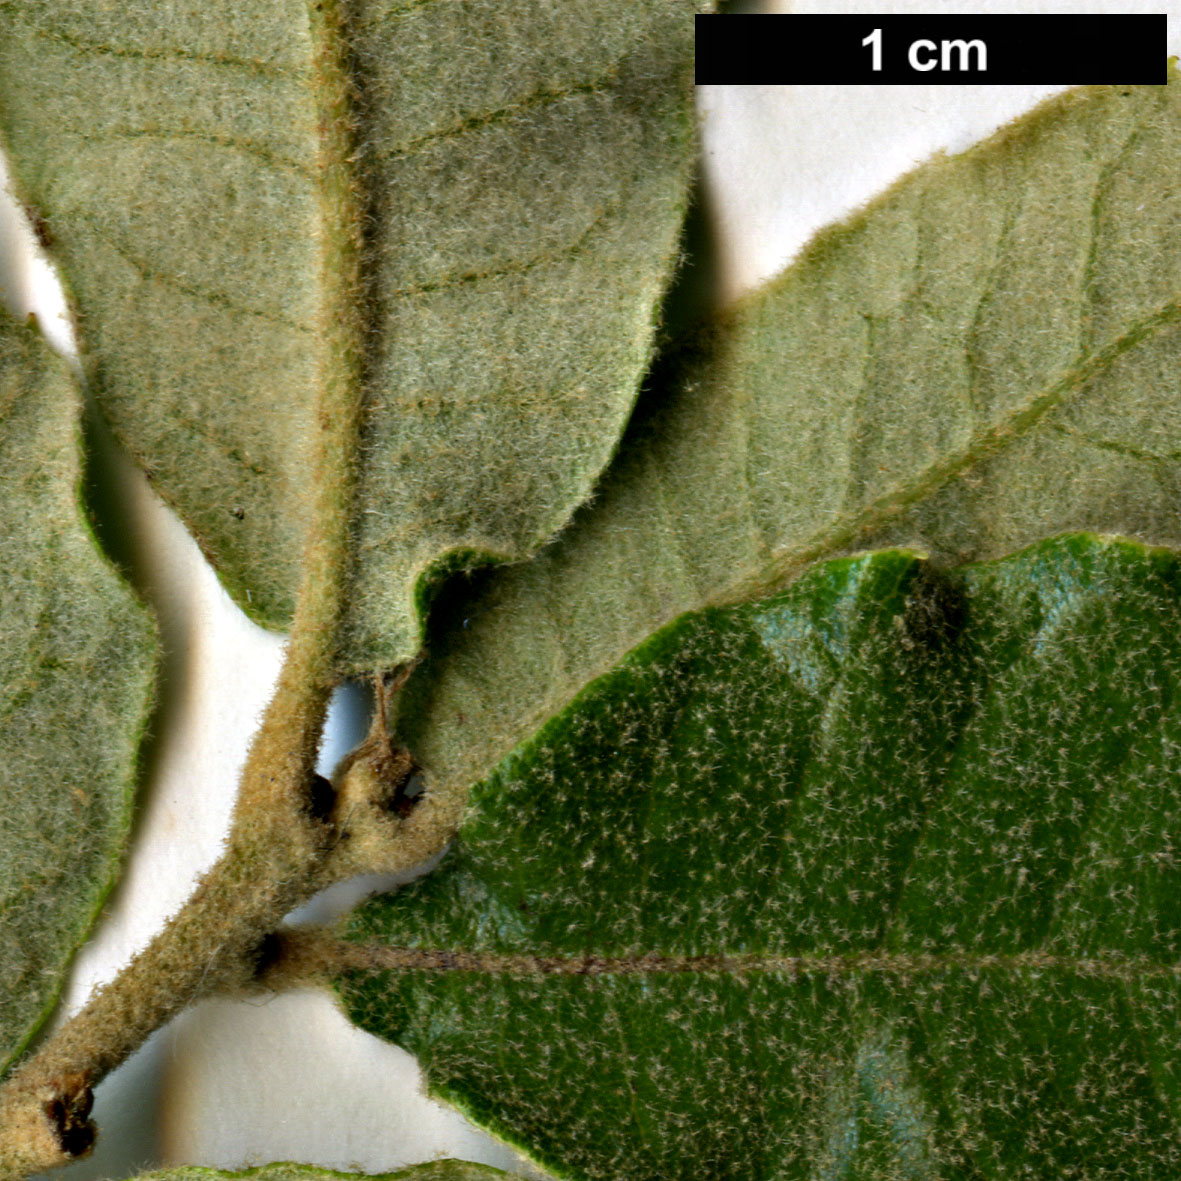 High resolution image: Family: Fagaceae - Genus: Quercus - Taxon: intricata